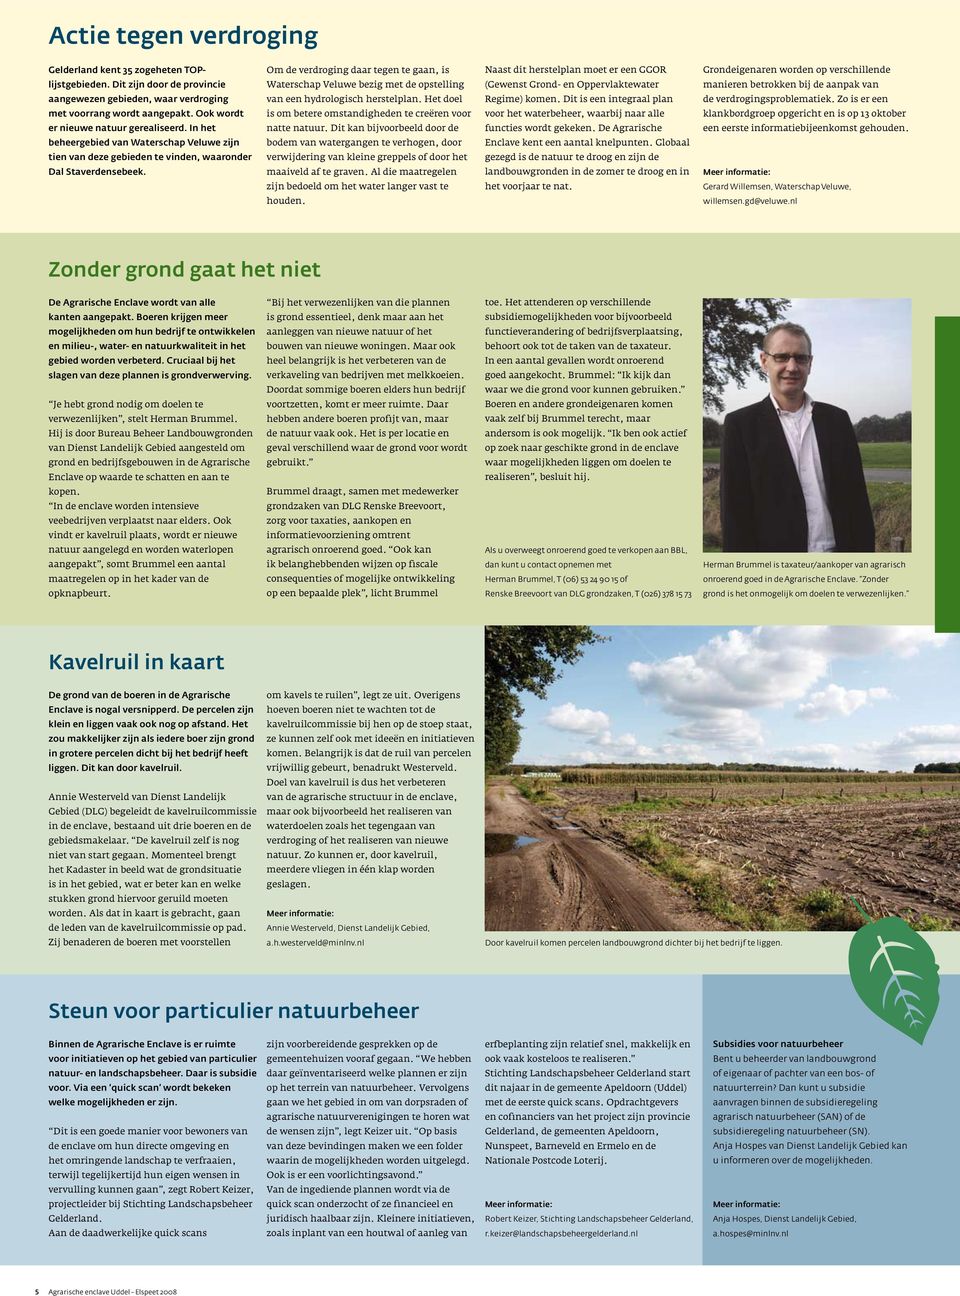 Om de verdroging daar tegen te gaan, is Waterschap Veluwe bezig met de opstelling van een hydrologisch herstelplan. Het doel is om betere omstandigheden te creëren voor natte natuur.